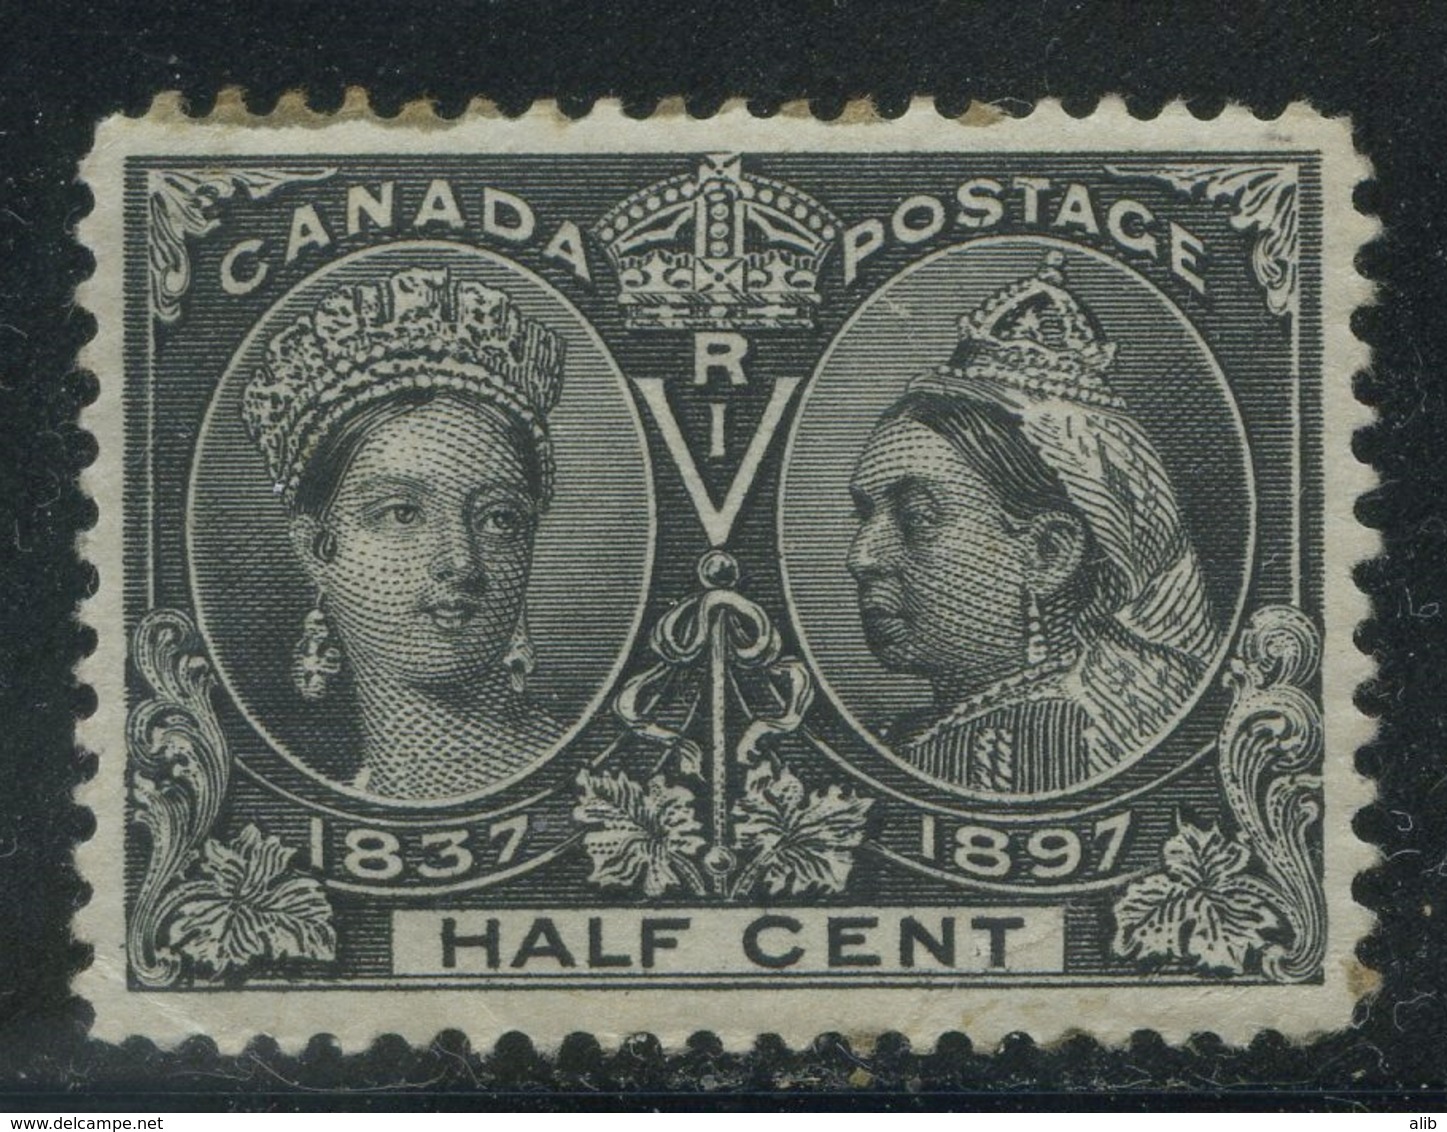 Canada 1897 Jubilee Issue Small Range Unused - Unused Stamps